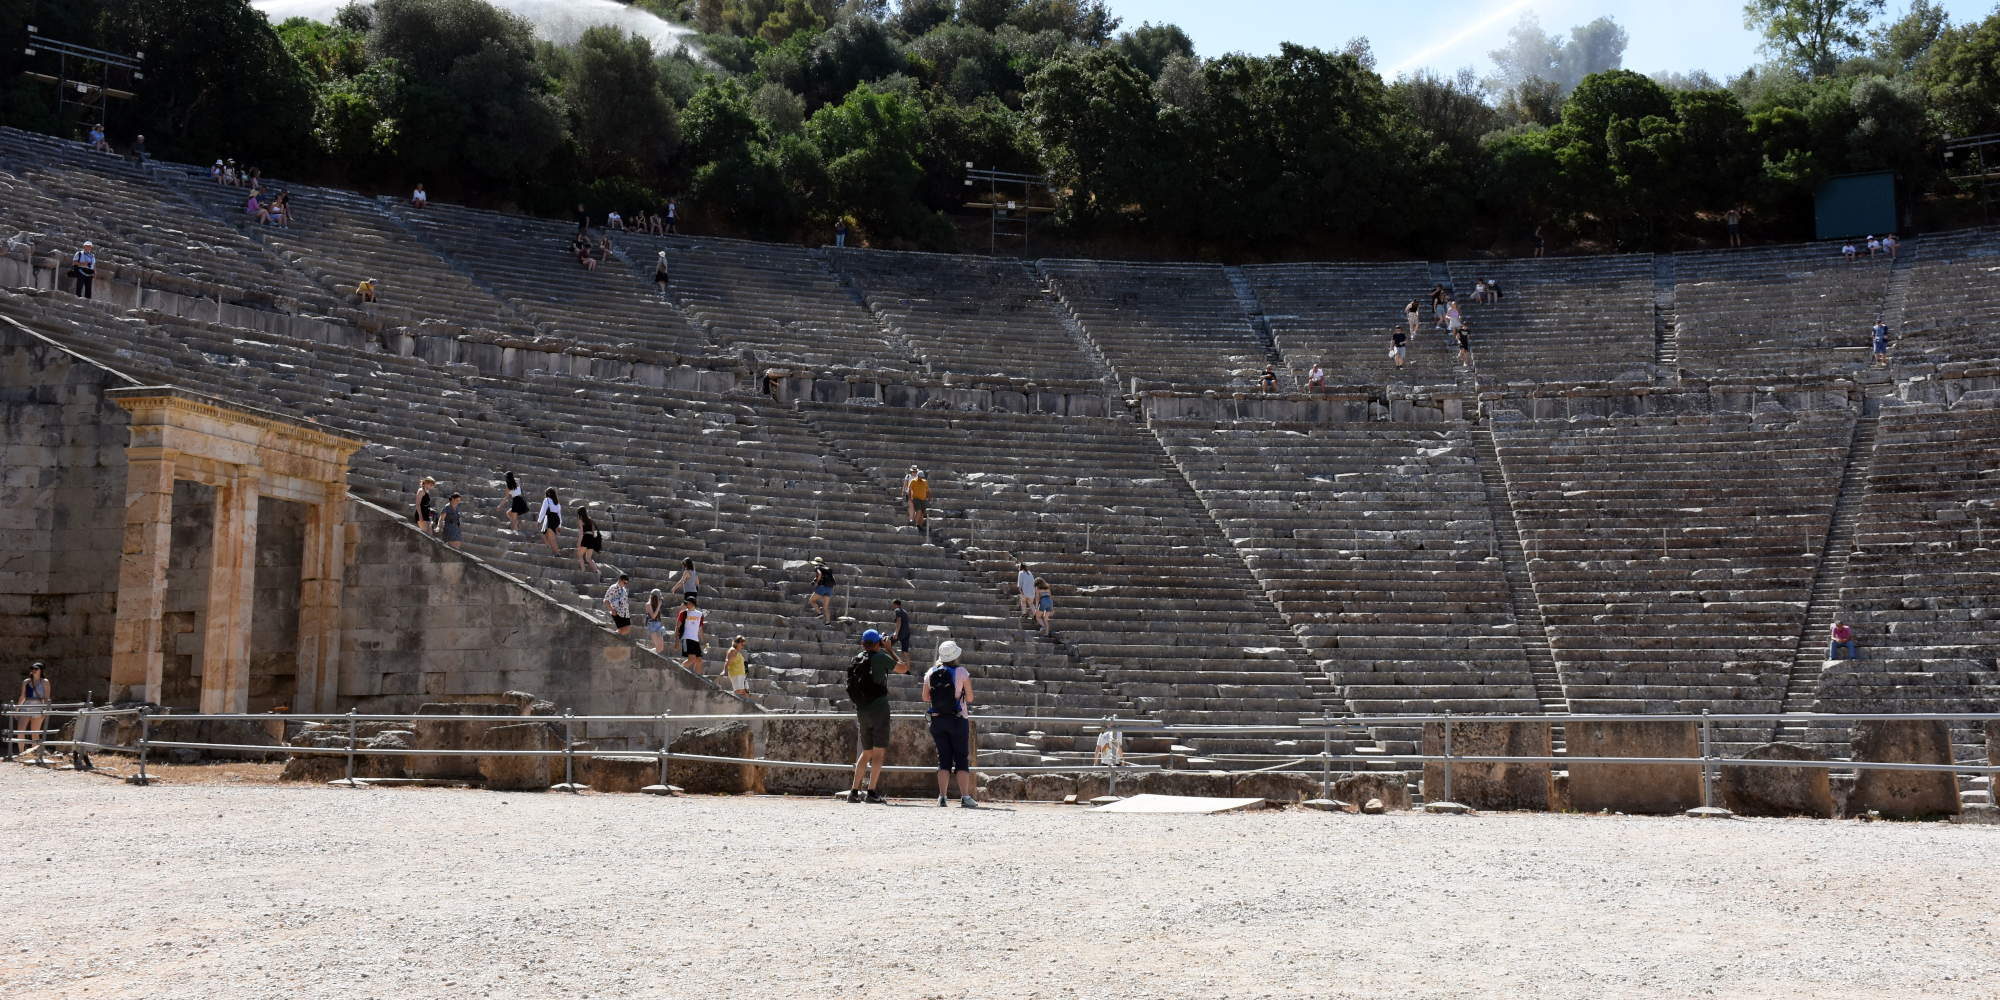 Εικόνα από το αρχαίο θέατρο Επιδαύρου